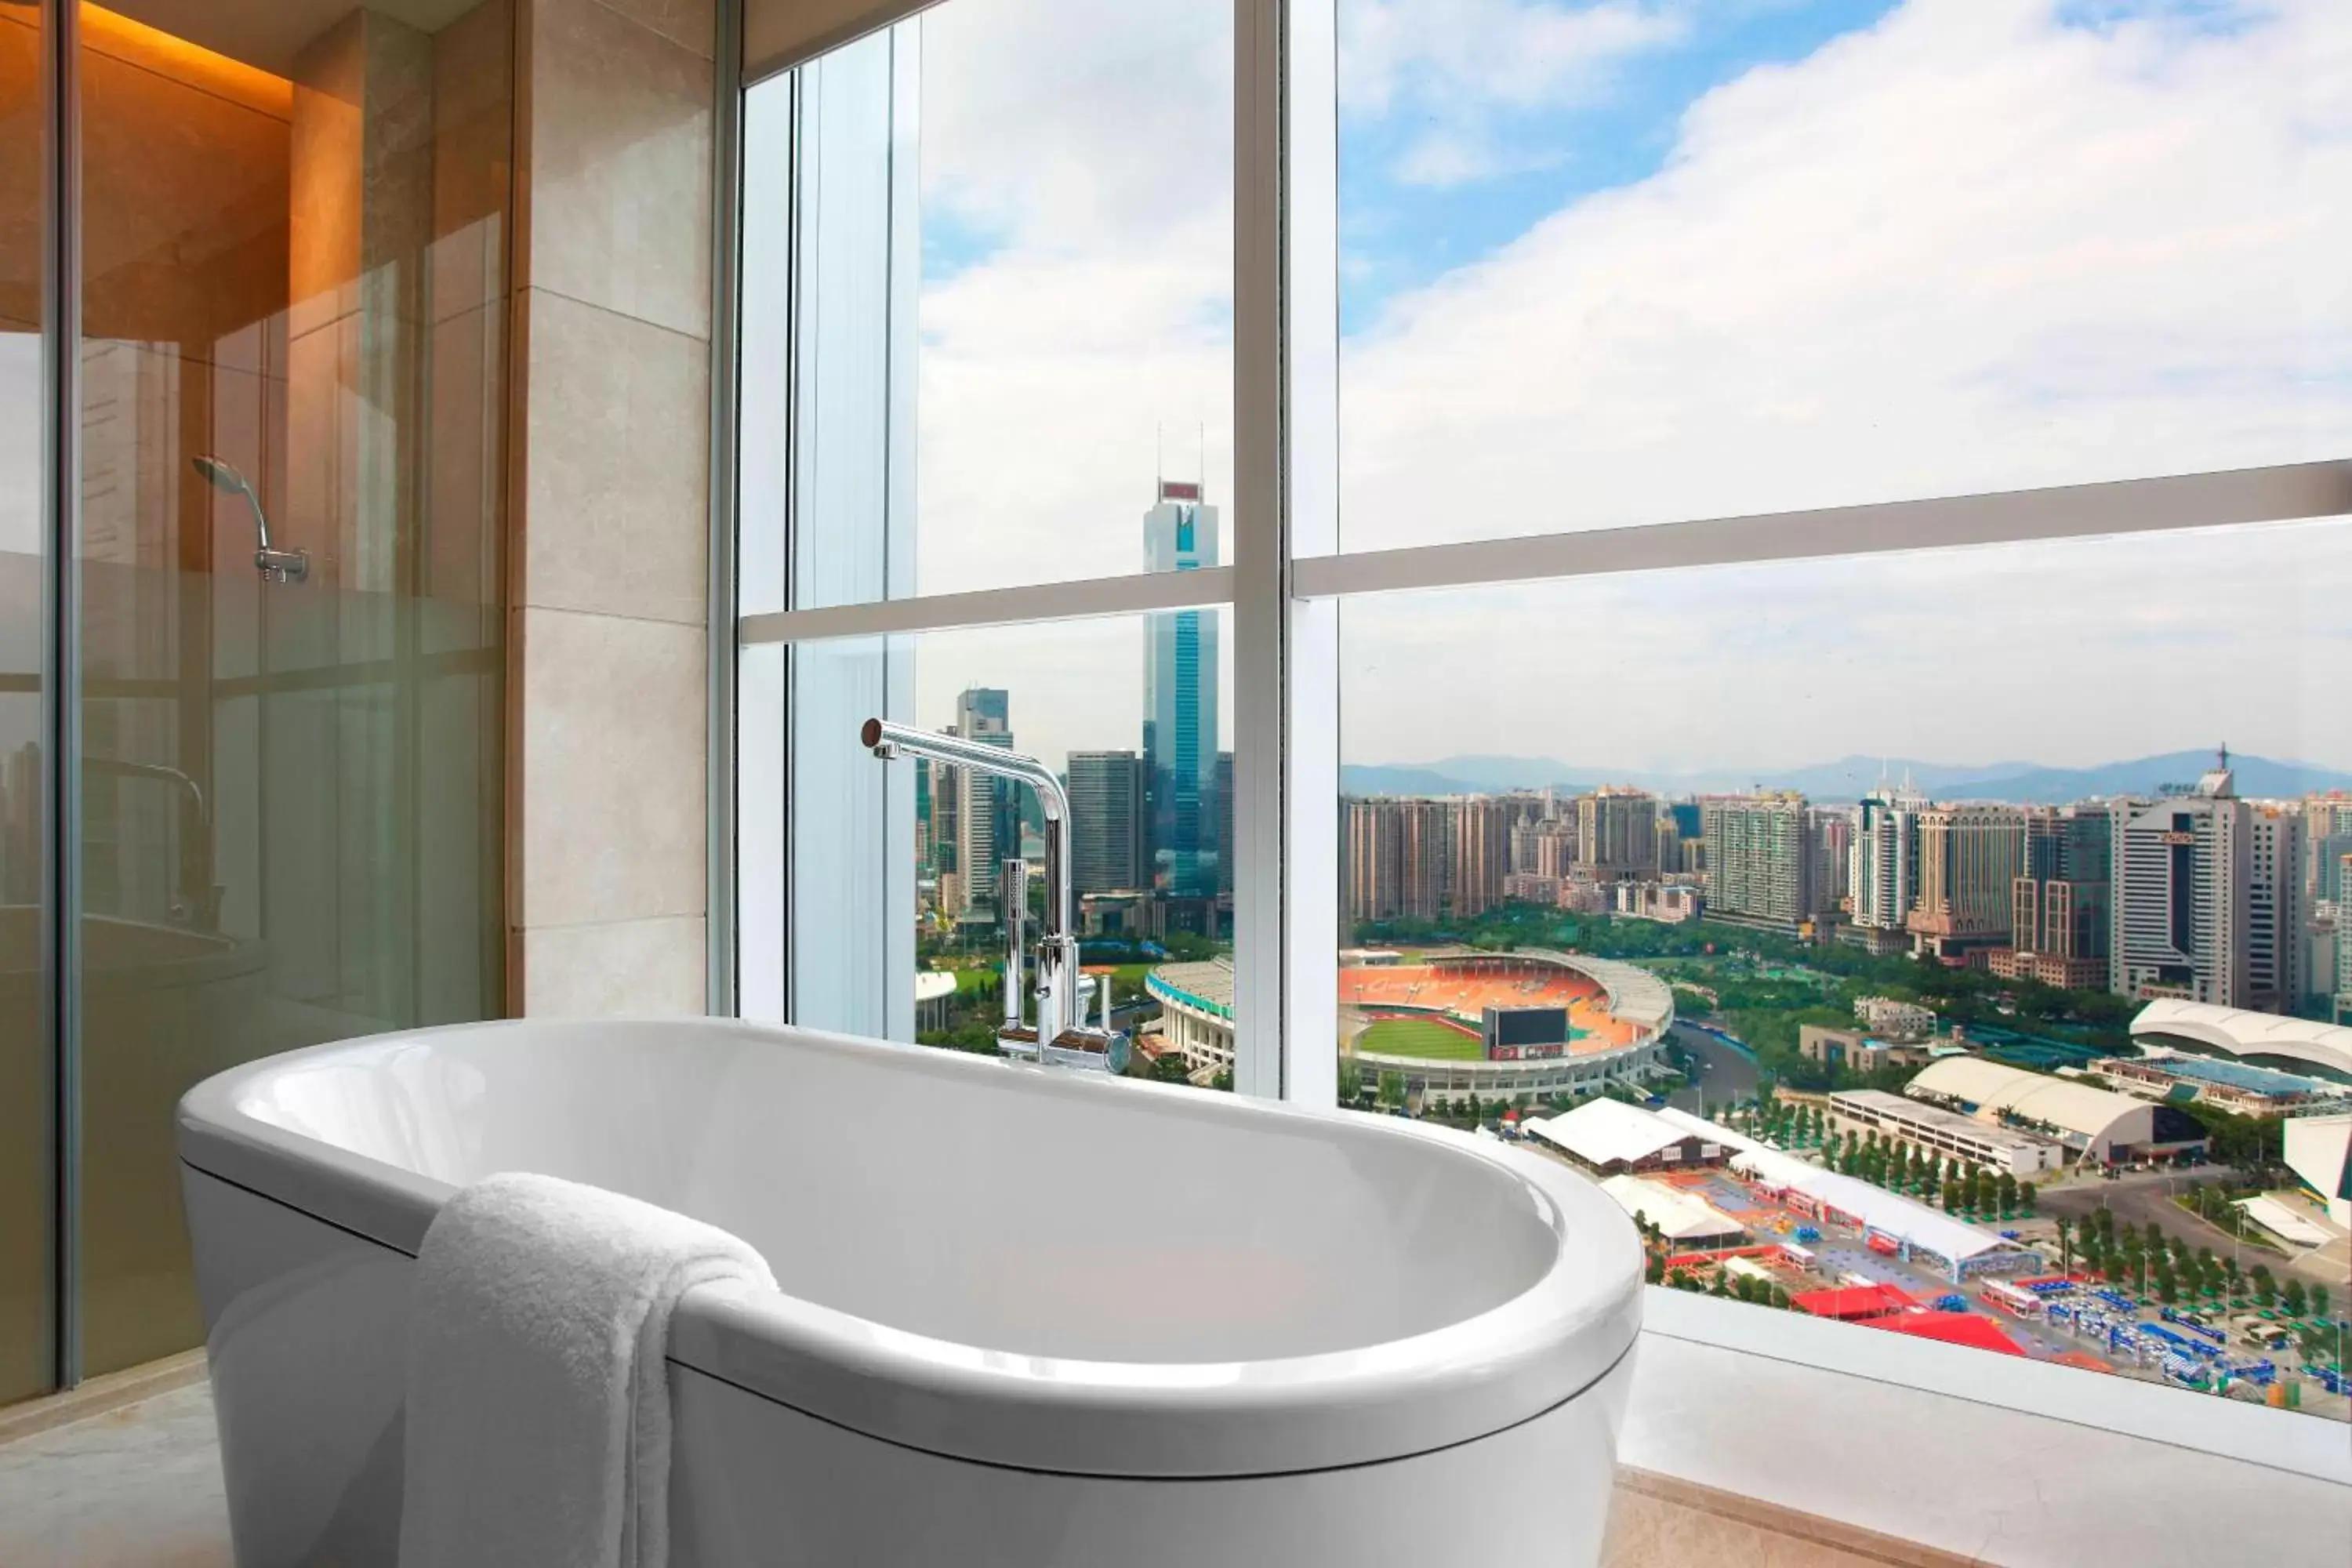 Bathroom in Sheraton Guangzhou Hotel